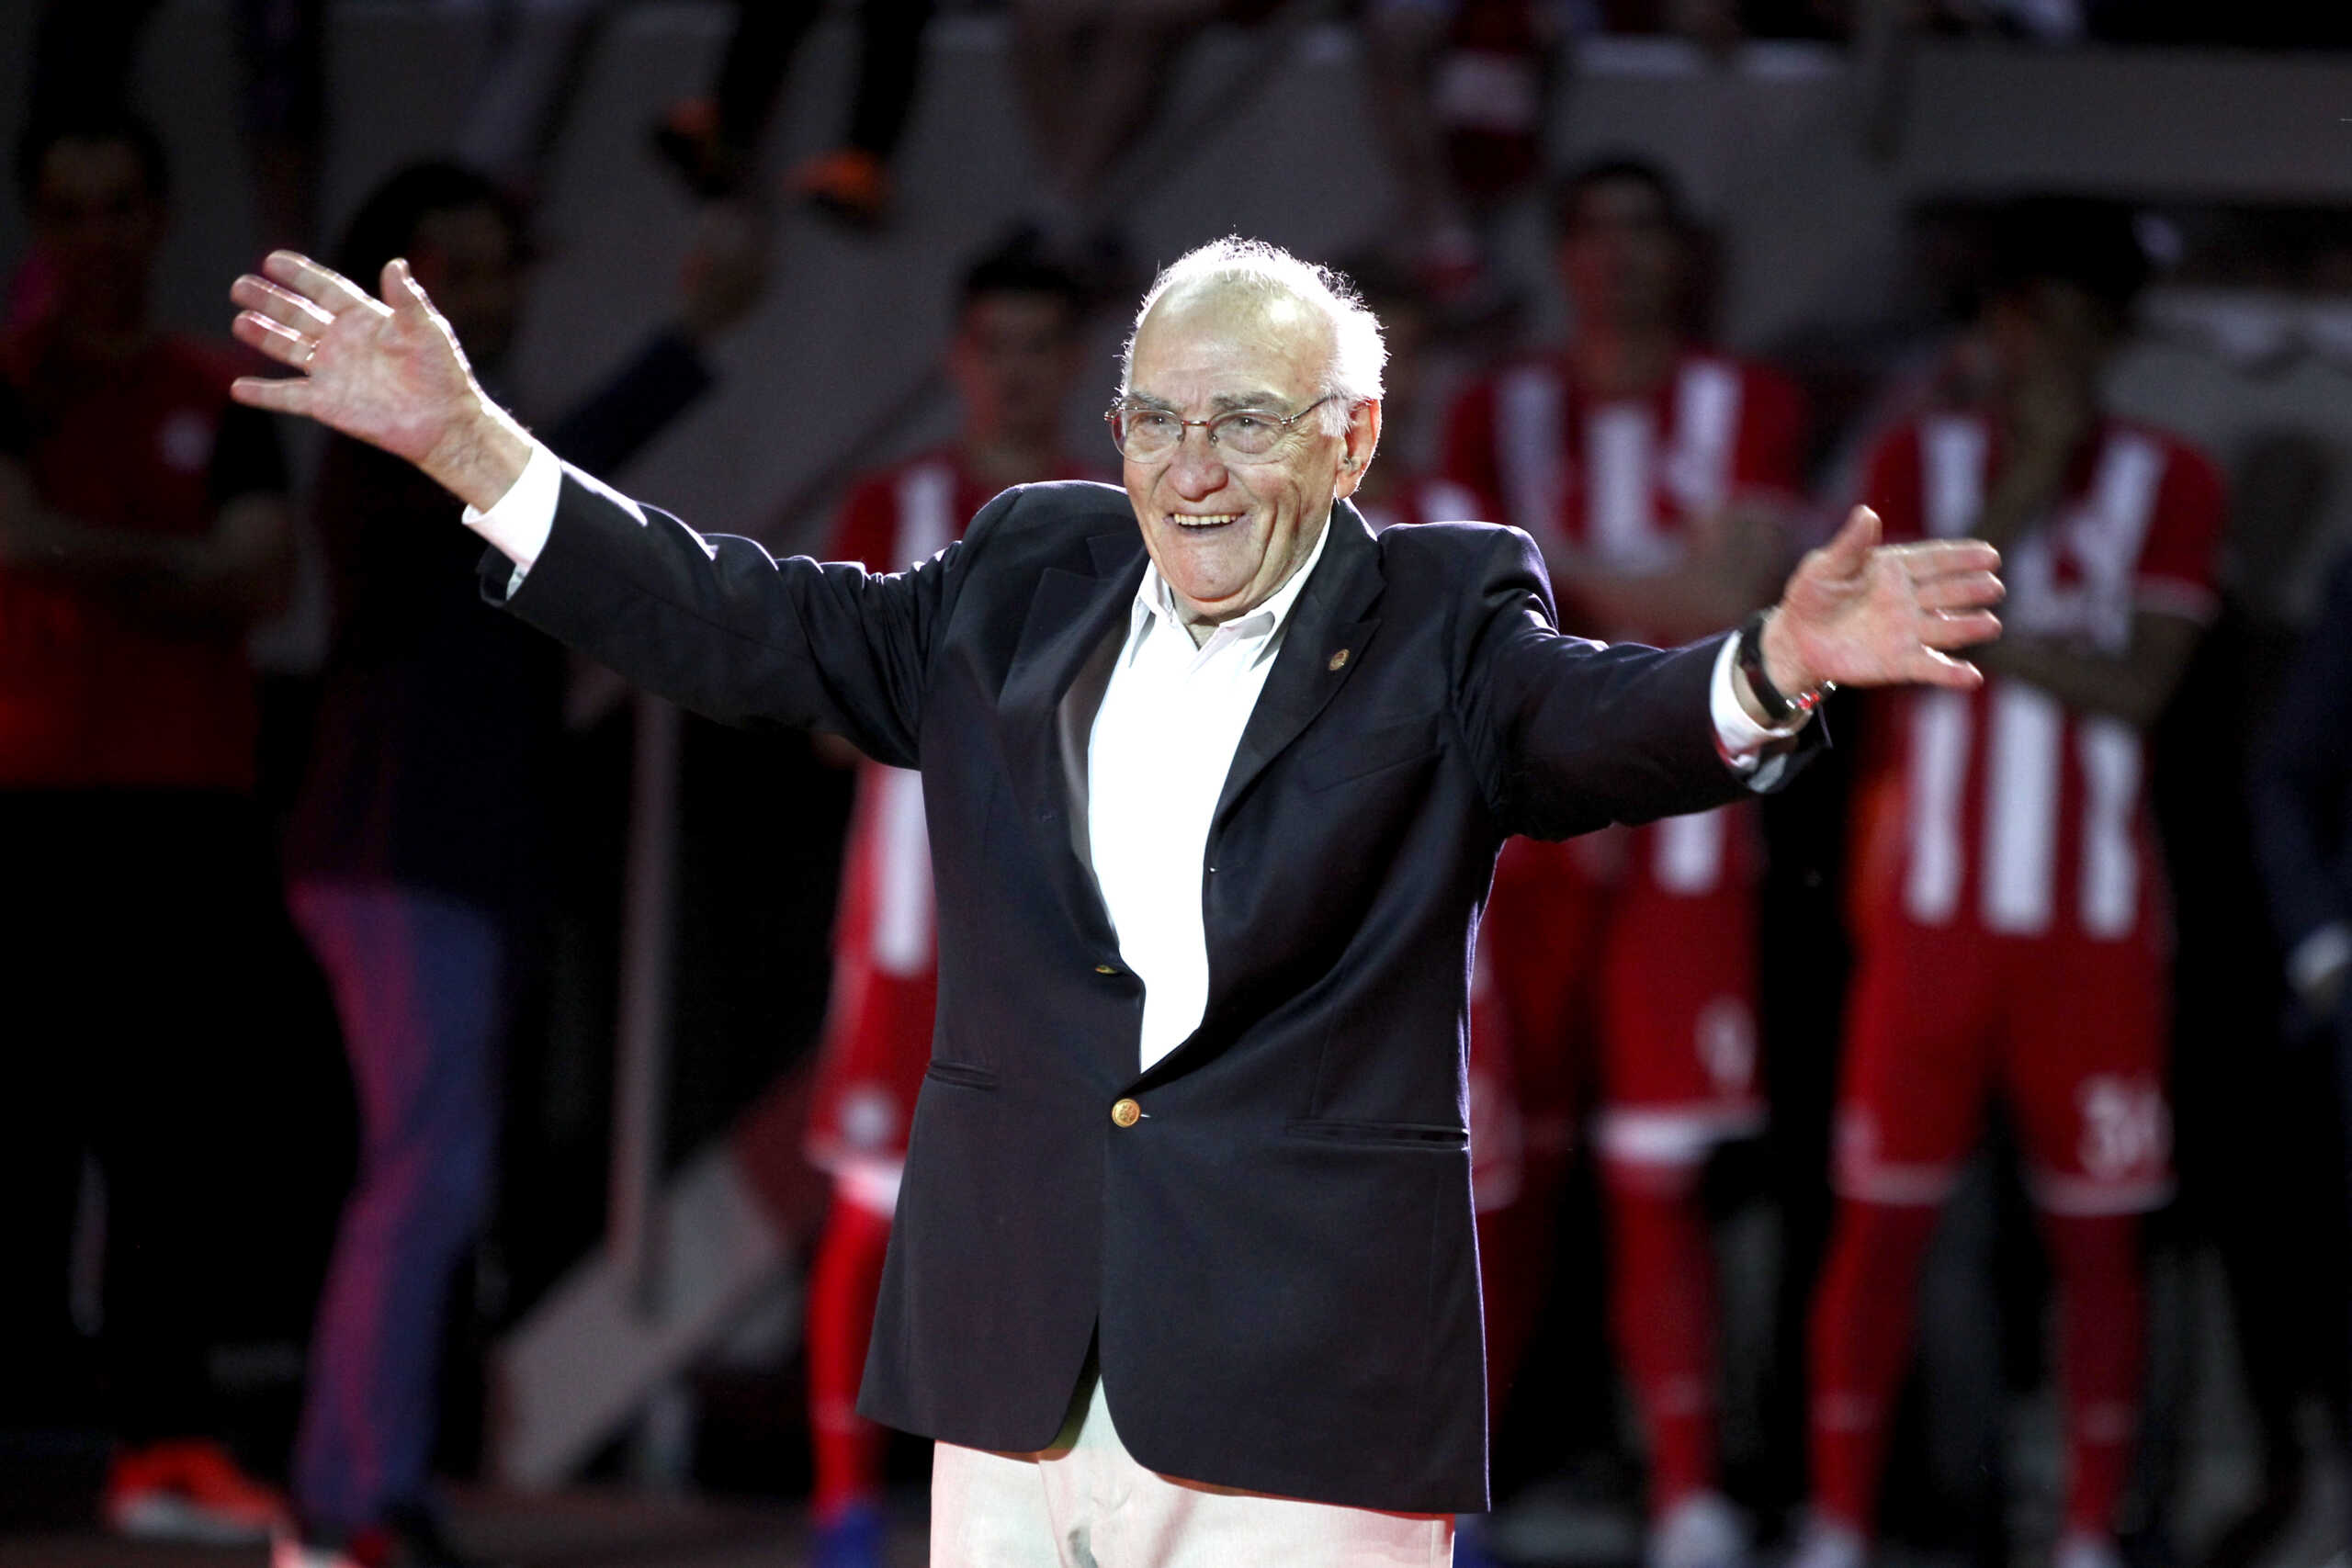 Πέθανε ο Γιώργος Δαρίβας, ένας από τους σπουδαιότερους ποδοσφαιριστές στην ιστορία του Ολυμπιακού